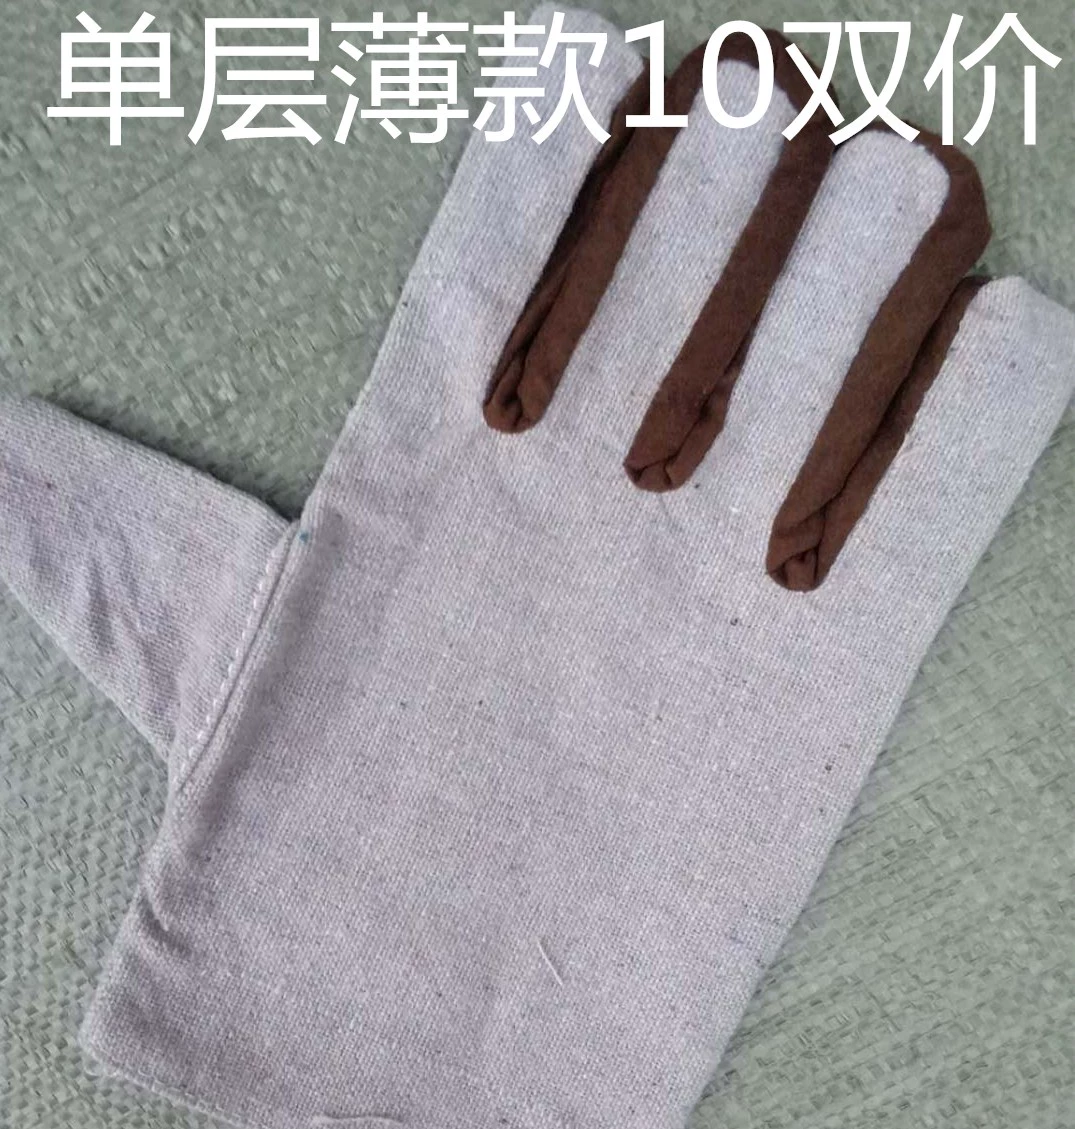 Găng tay vải bạt hai lớp dày lót đủ hàng 24 dây gia công cơ khí hàn chống mòn hãng sản xuất thiết bị bảo hộ lao động công nghiệp găng tay sợi trắng bao tay cách nhiệt 